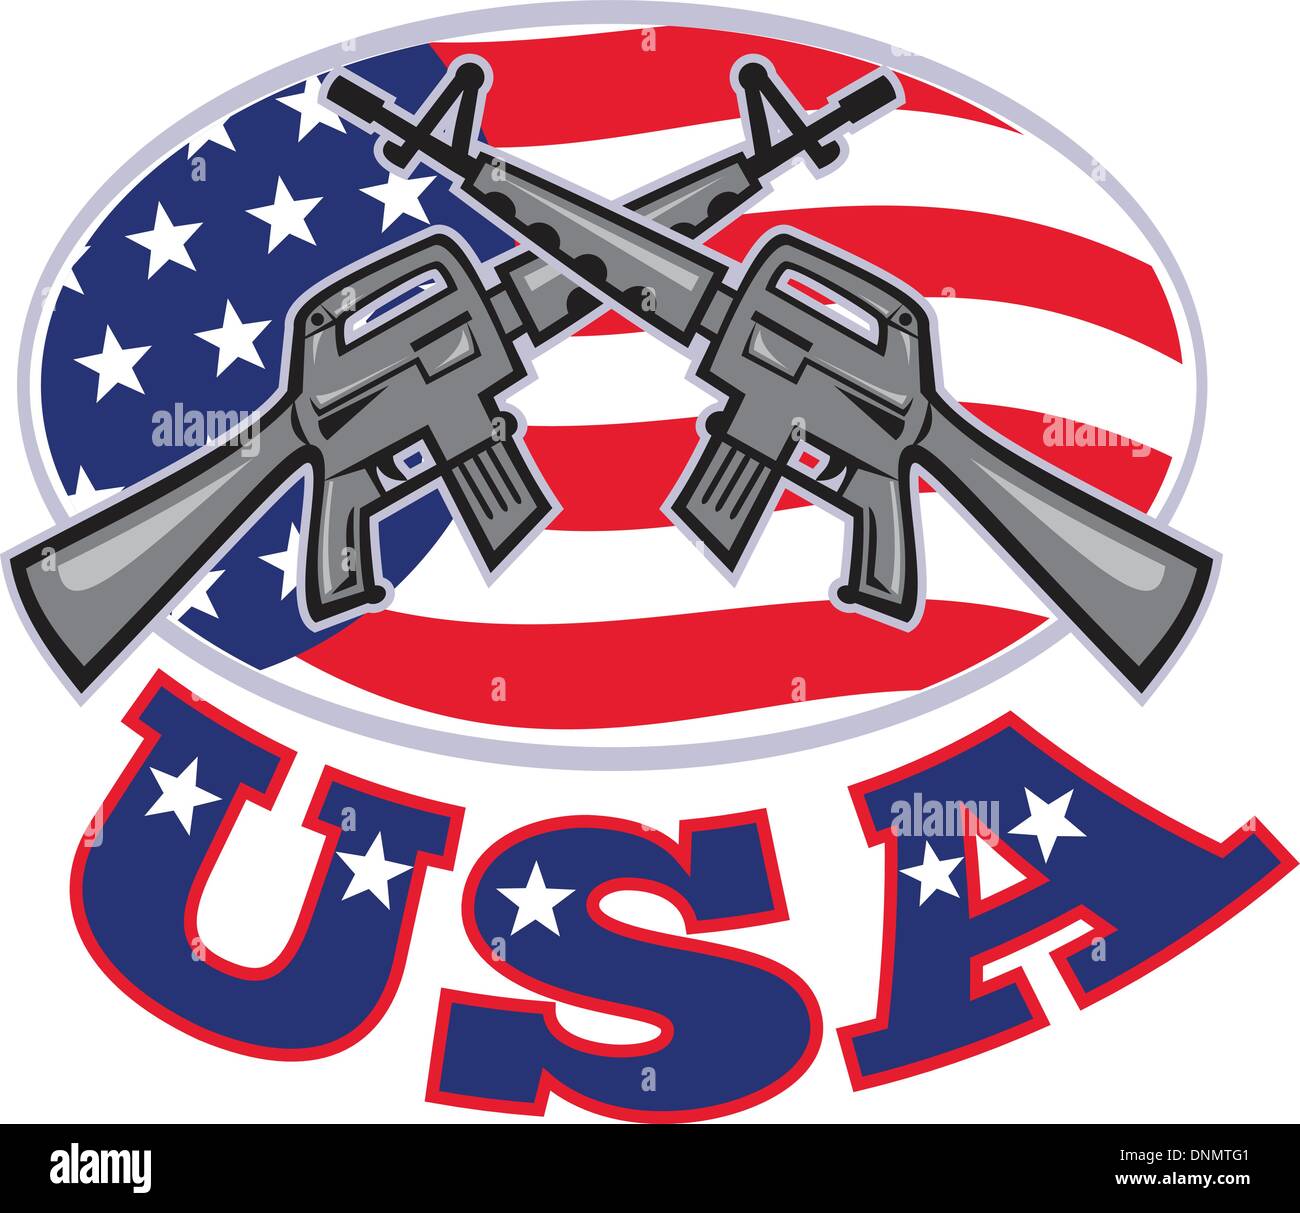 Abbildung von einem Colt AR-15 Armalite M-16 Sturmgewehr mit amerikanischen stars und Stripes flag gekreuzten gesetzt in Seitenansicht mit Worten USA Ellipse. Stock Vektor